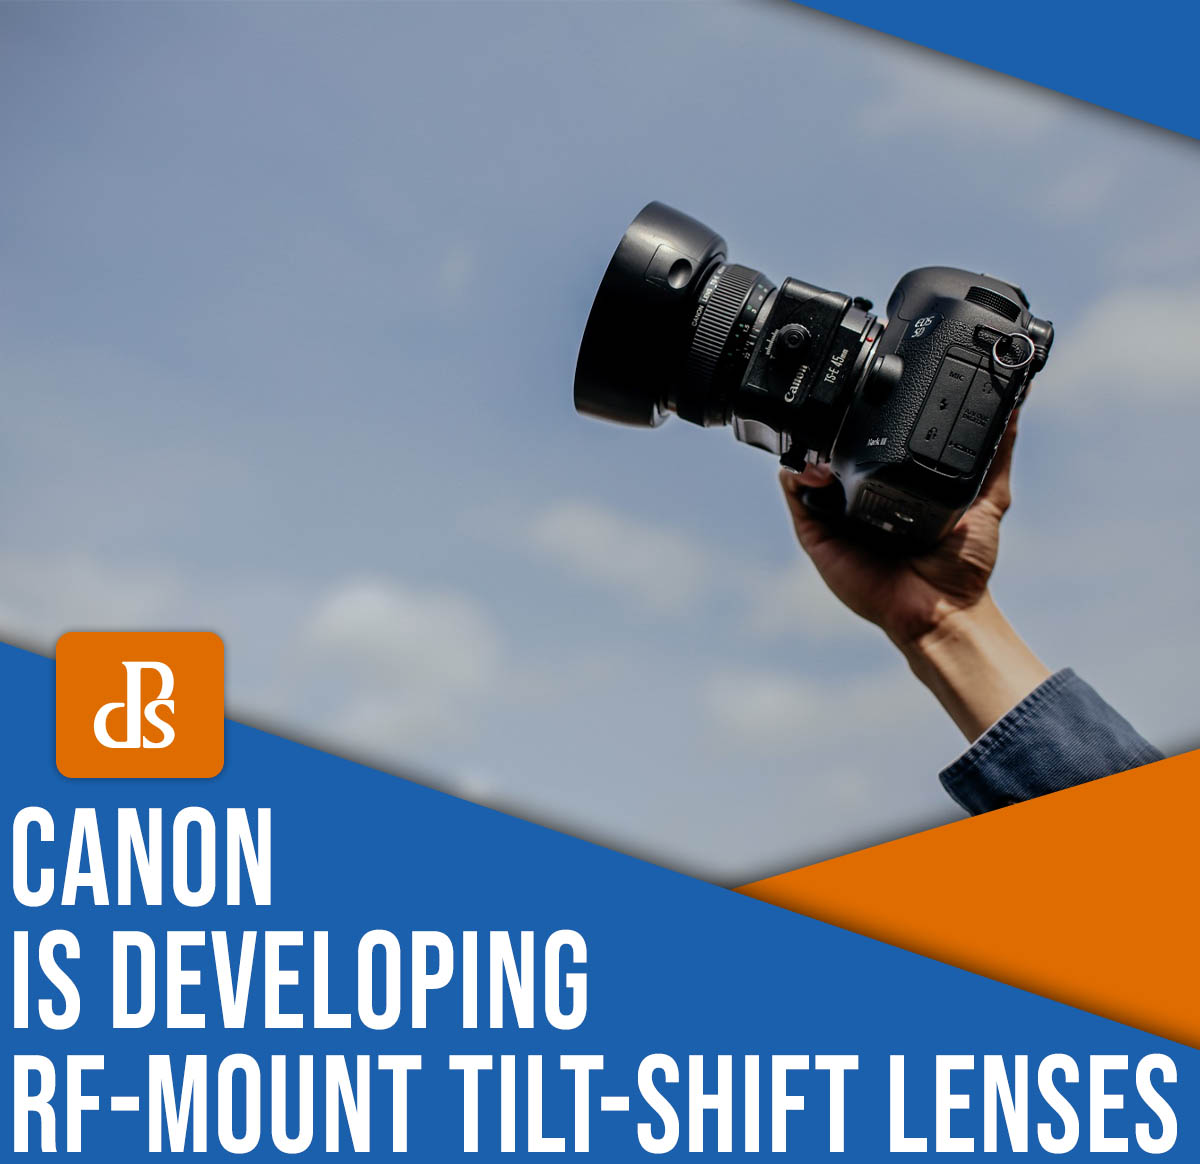 Canon is developing RF-mount tilt-shift lenses